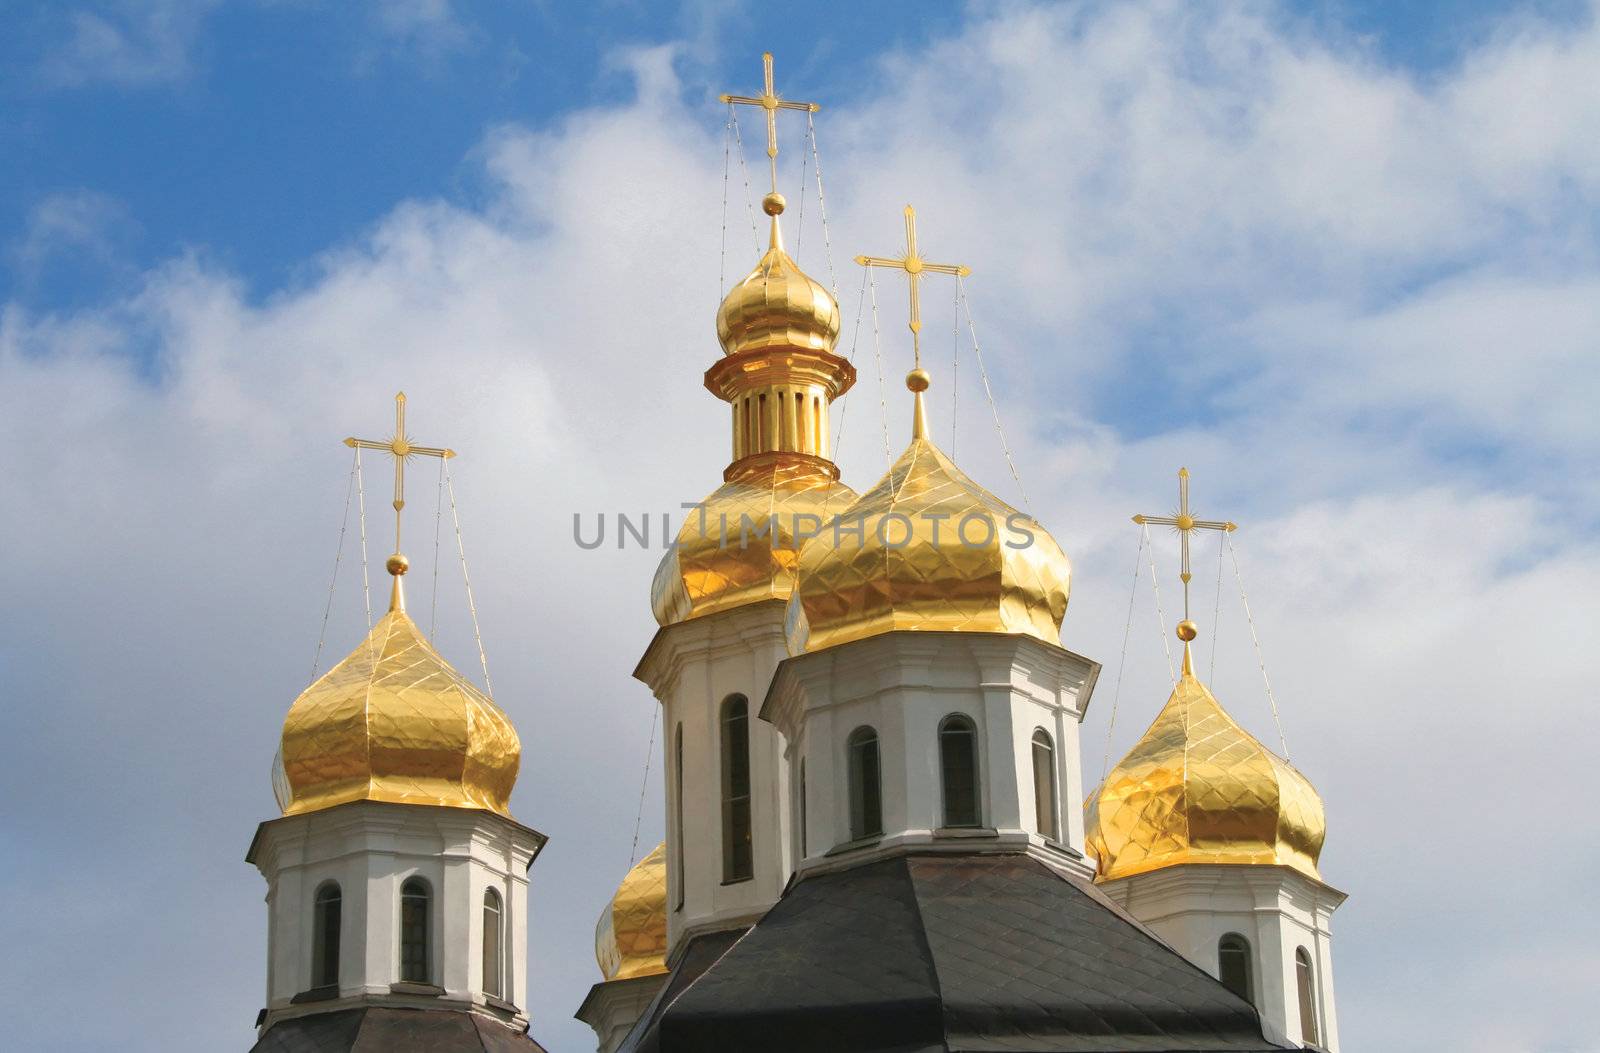 Chernigov church by itislove